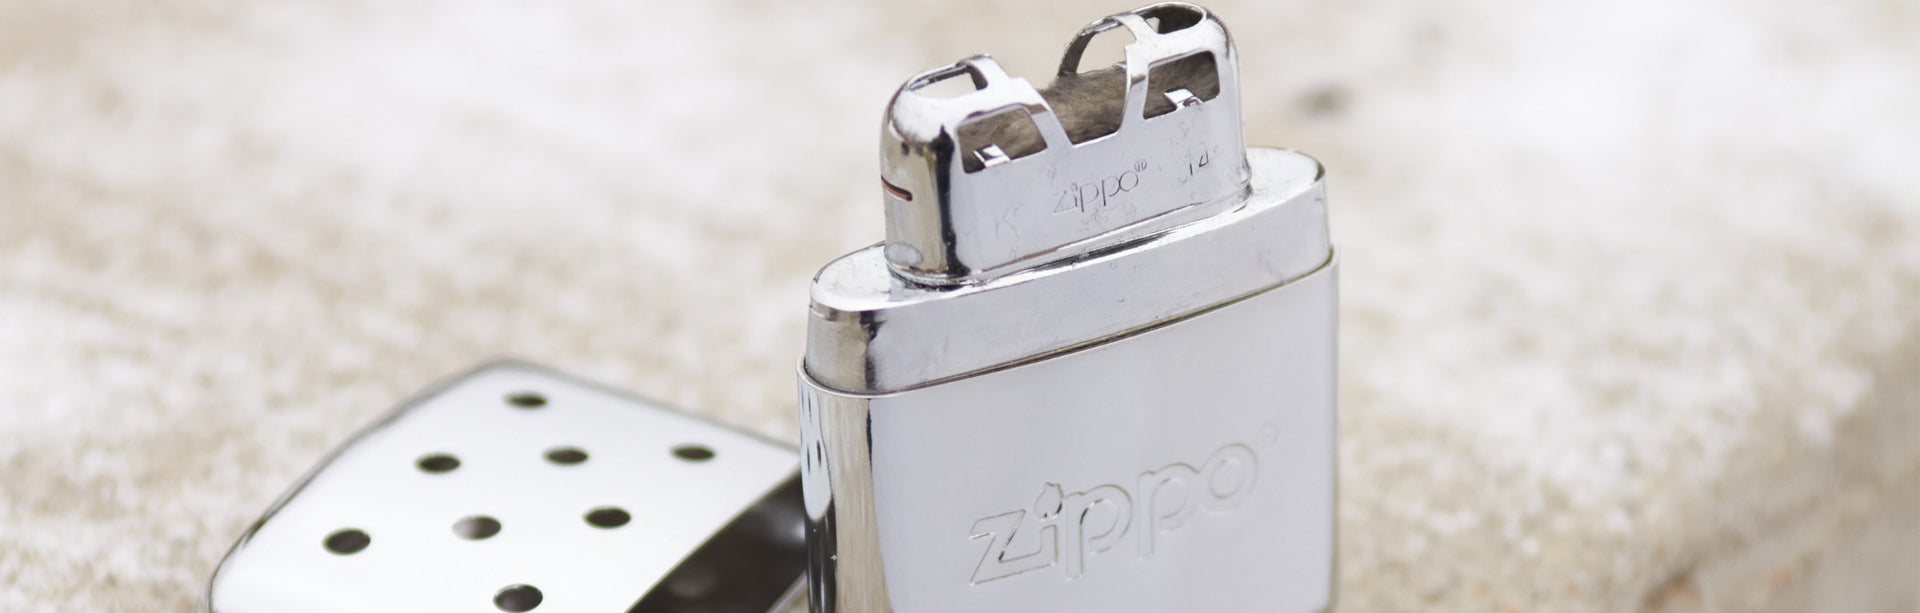 Official Zippo Netherlands Shop | Zippo.Nl